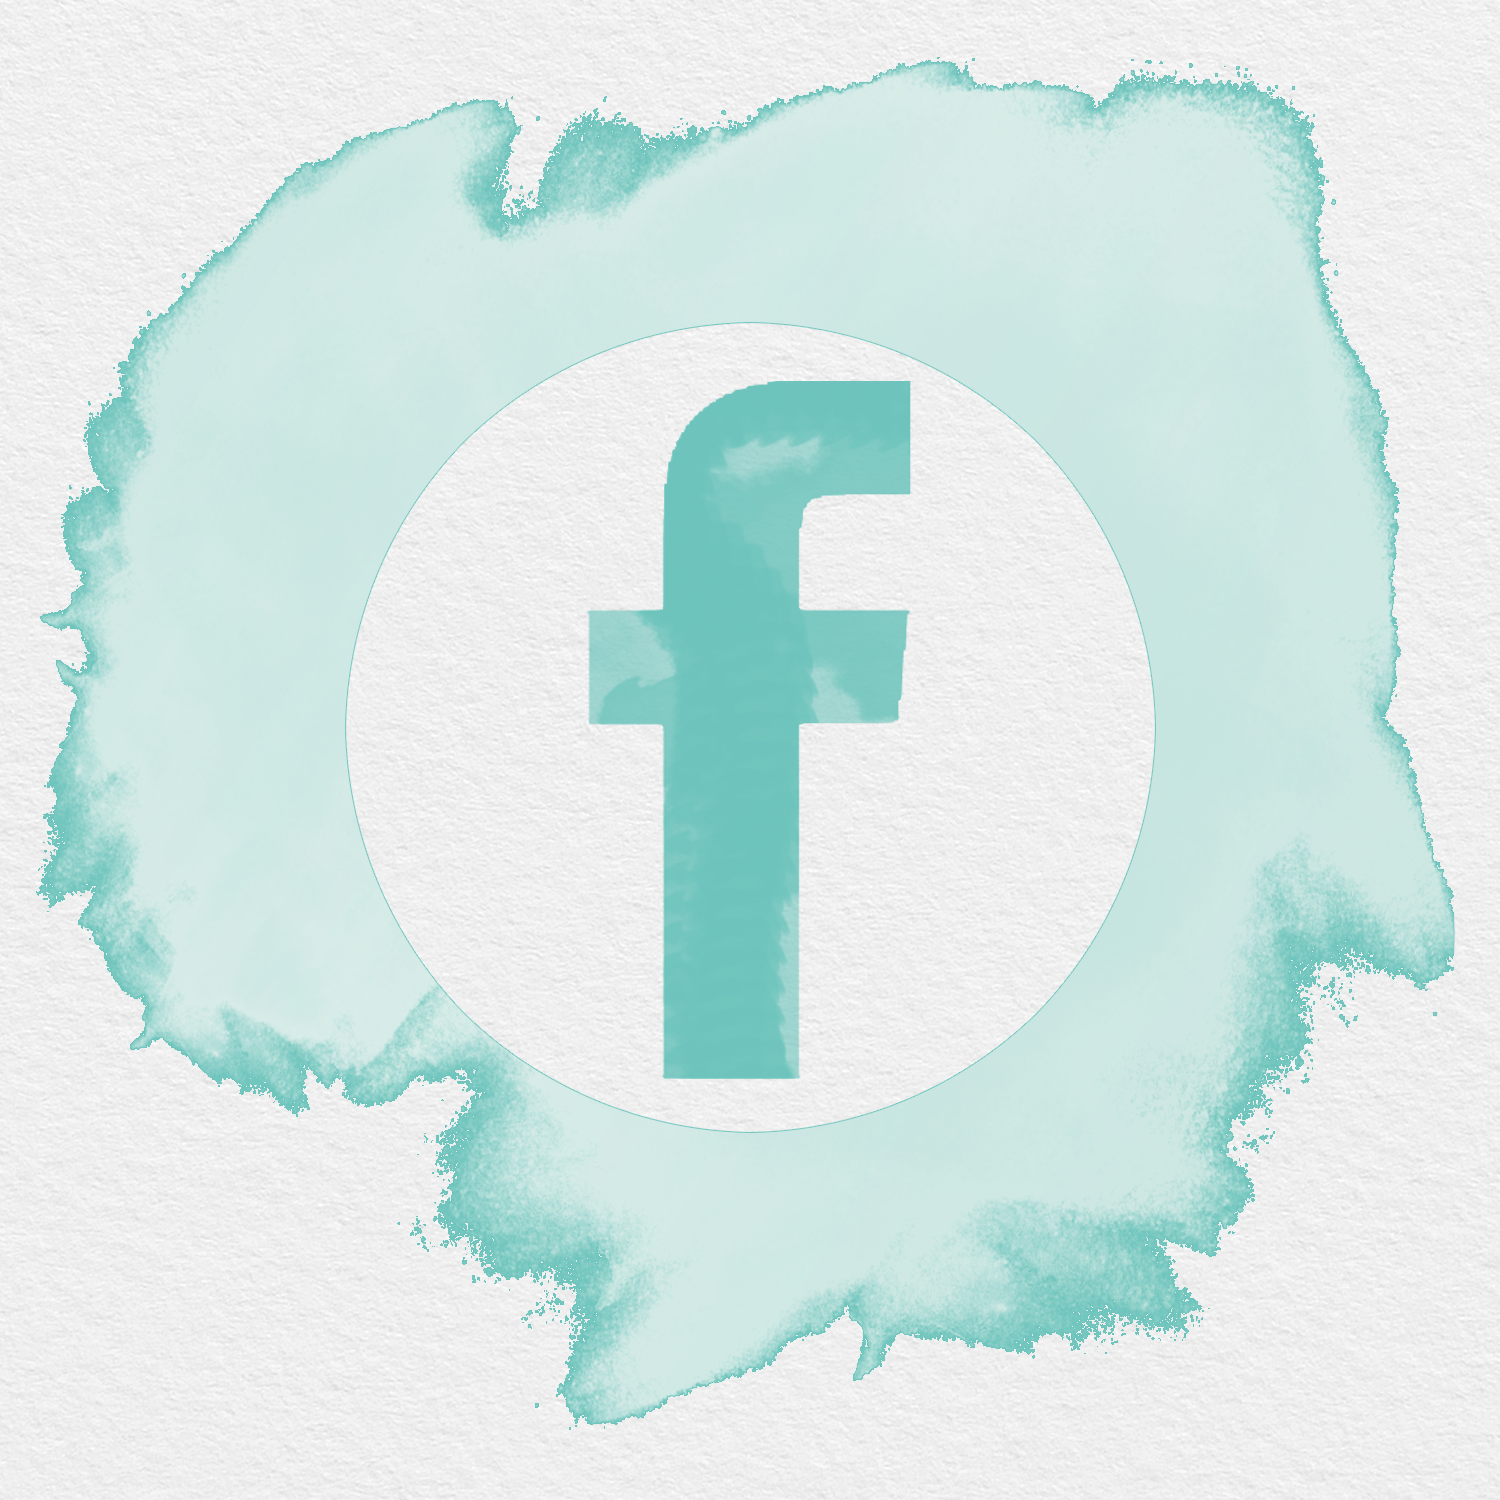 FACEBOOK ICON WATERCOLOR SPLASH. Facebook icons, iPhone design, Watercolor splash